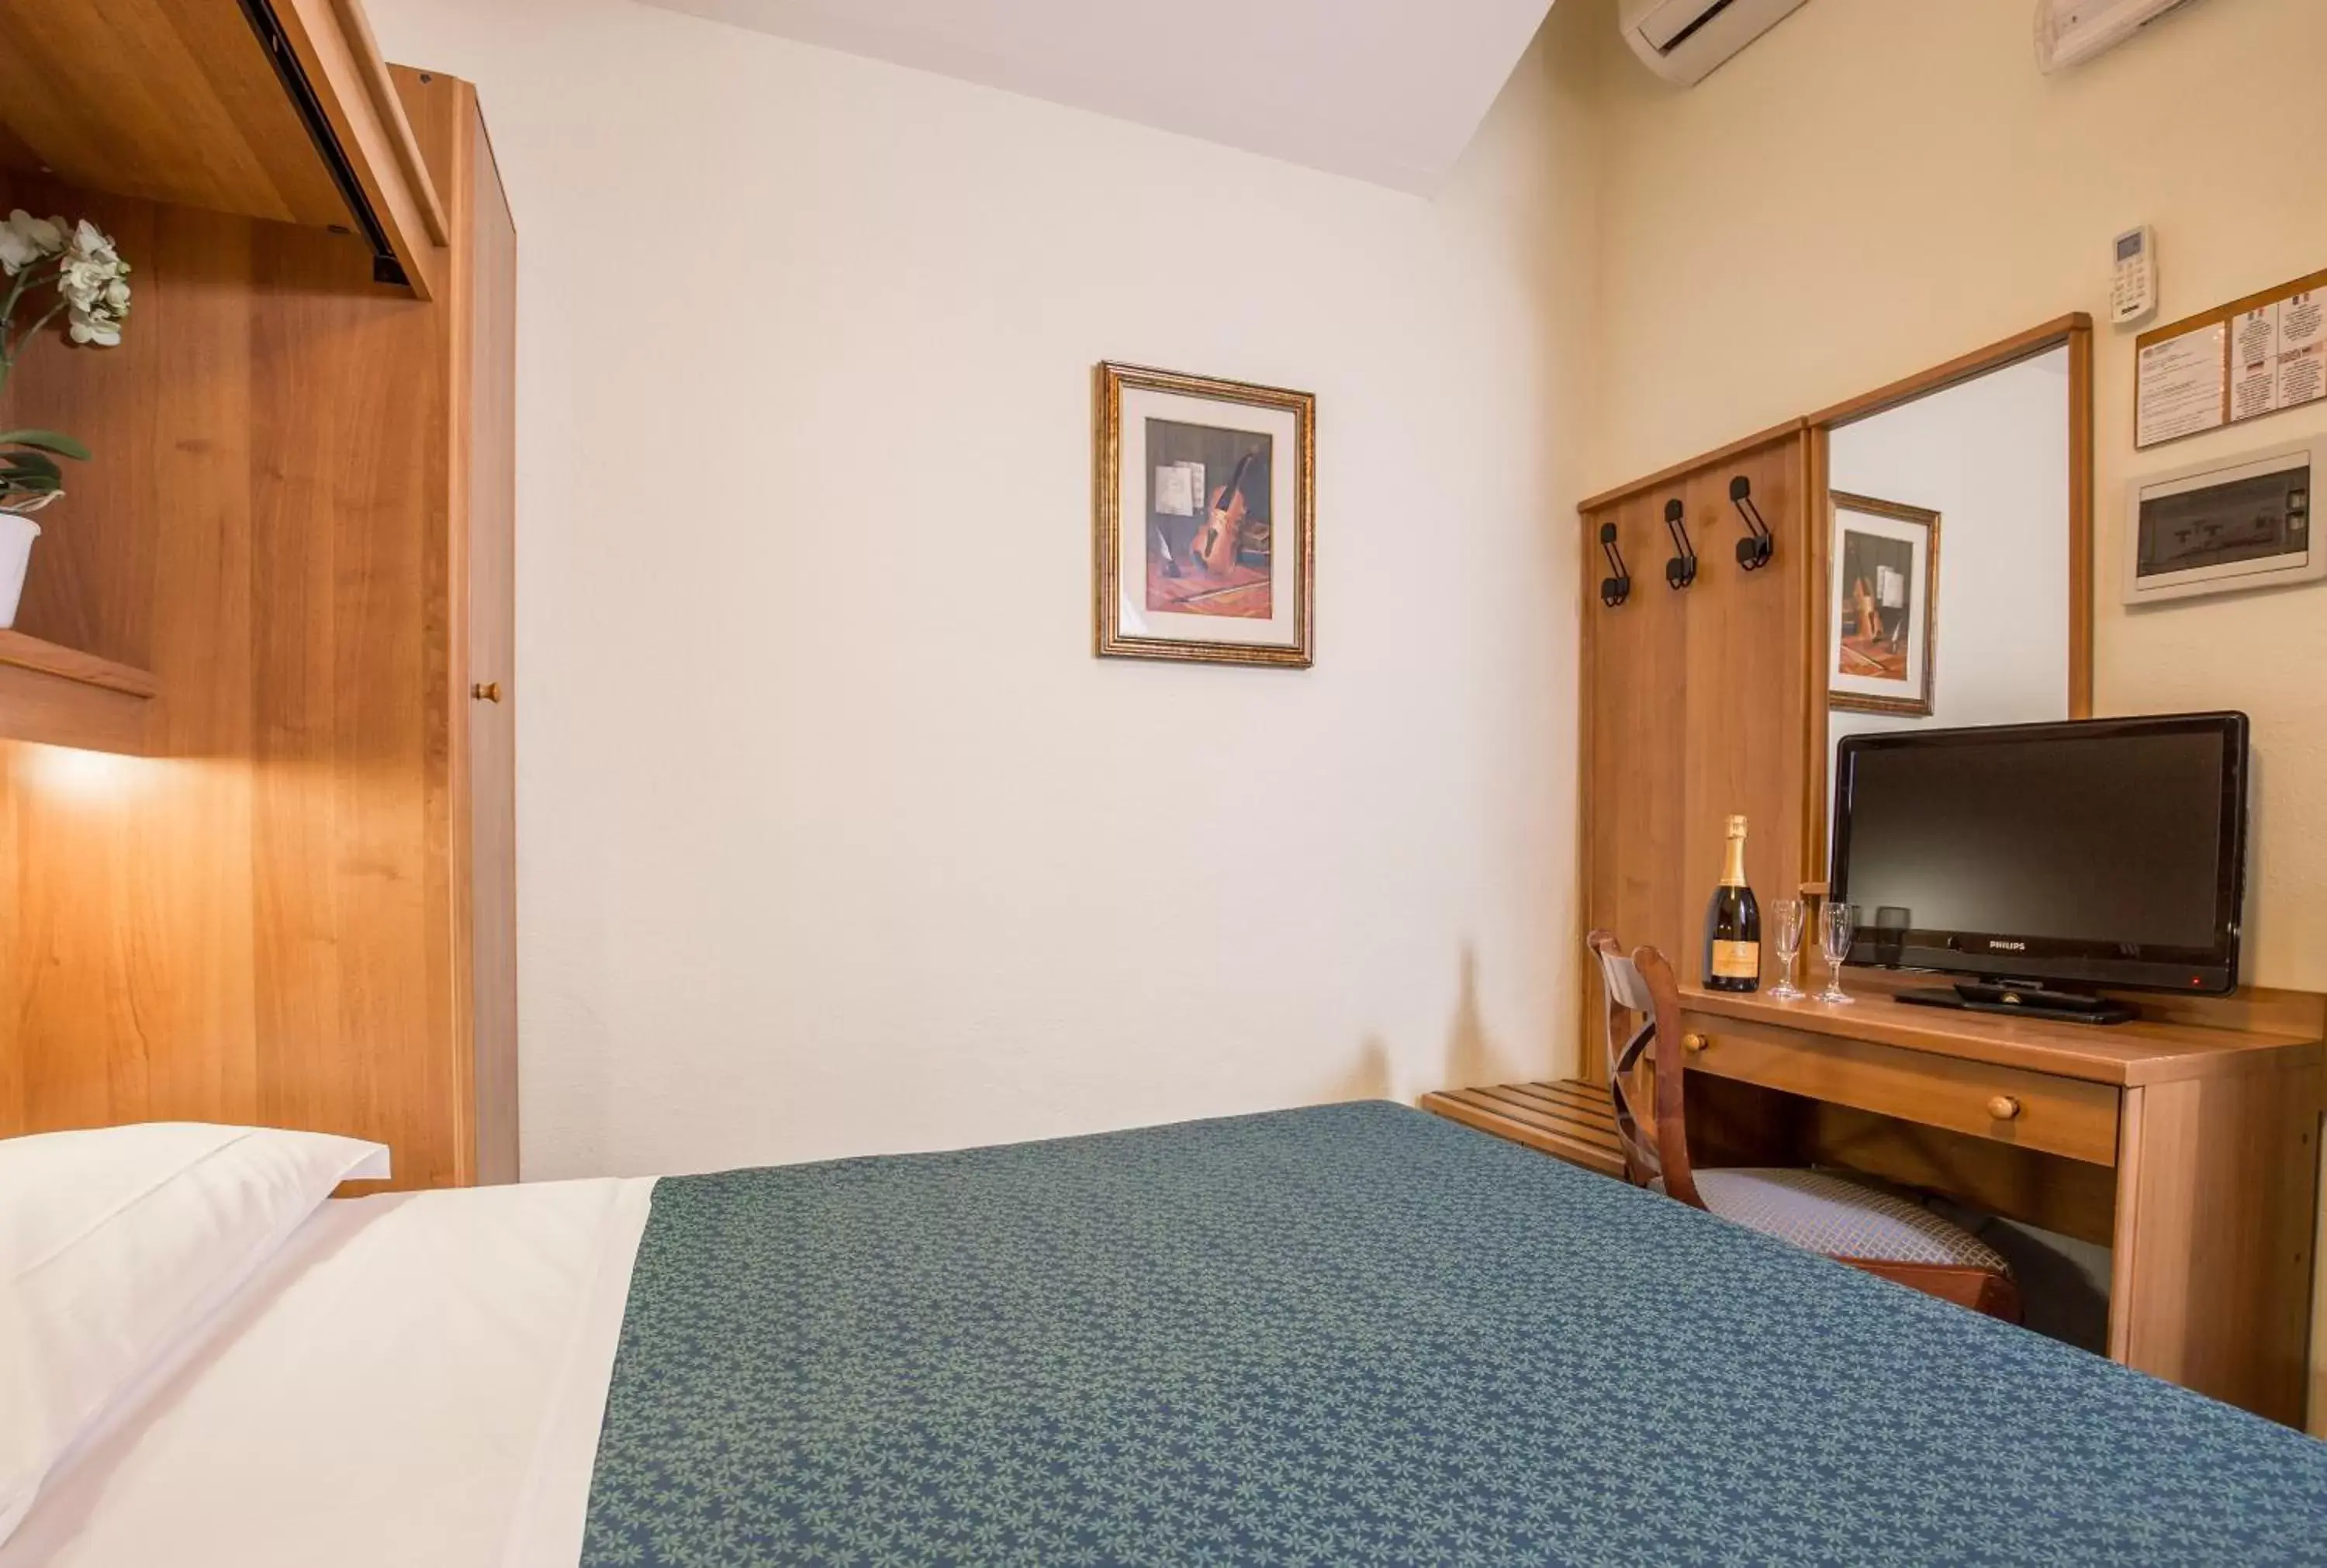 Bed, Room Photo in Hotel Trastevere